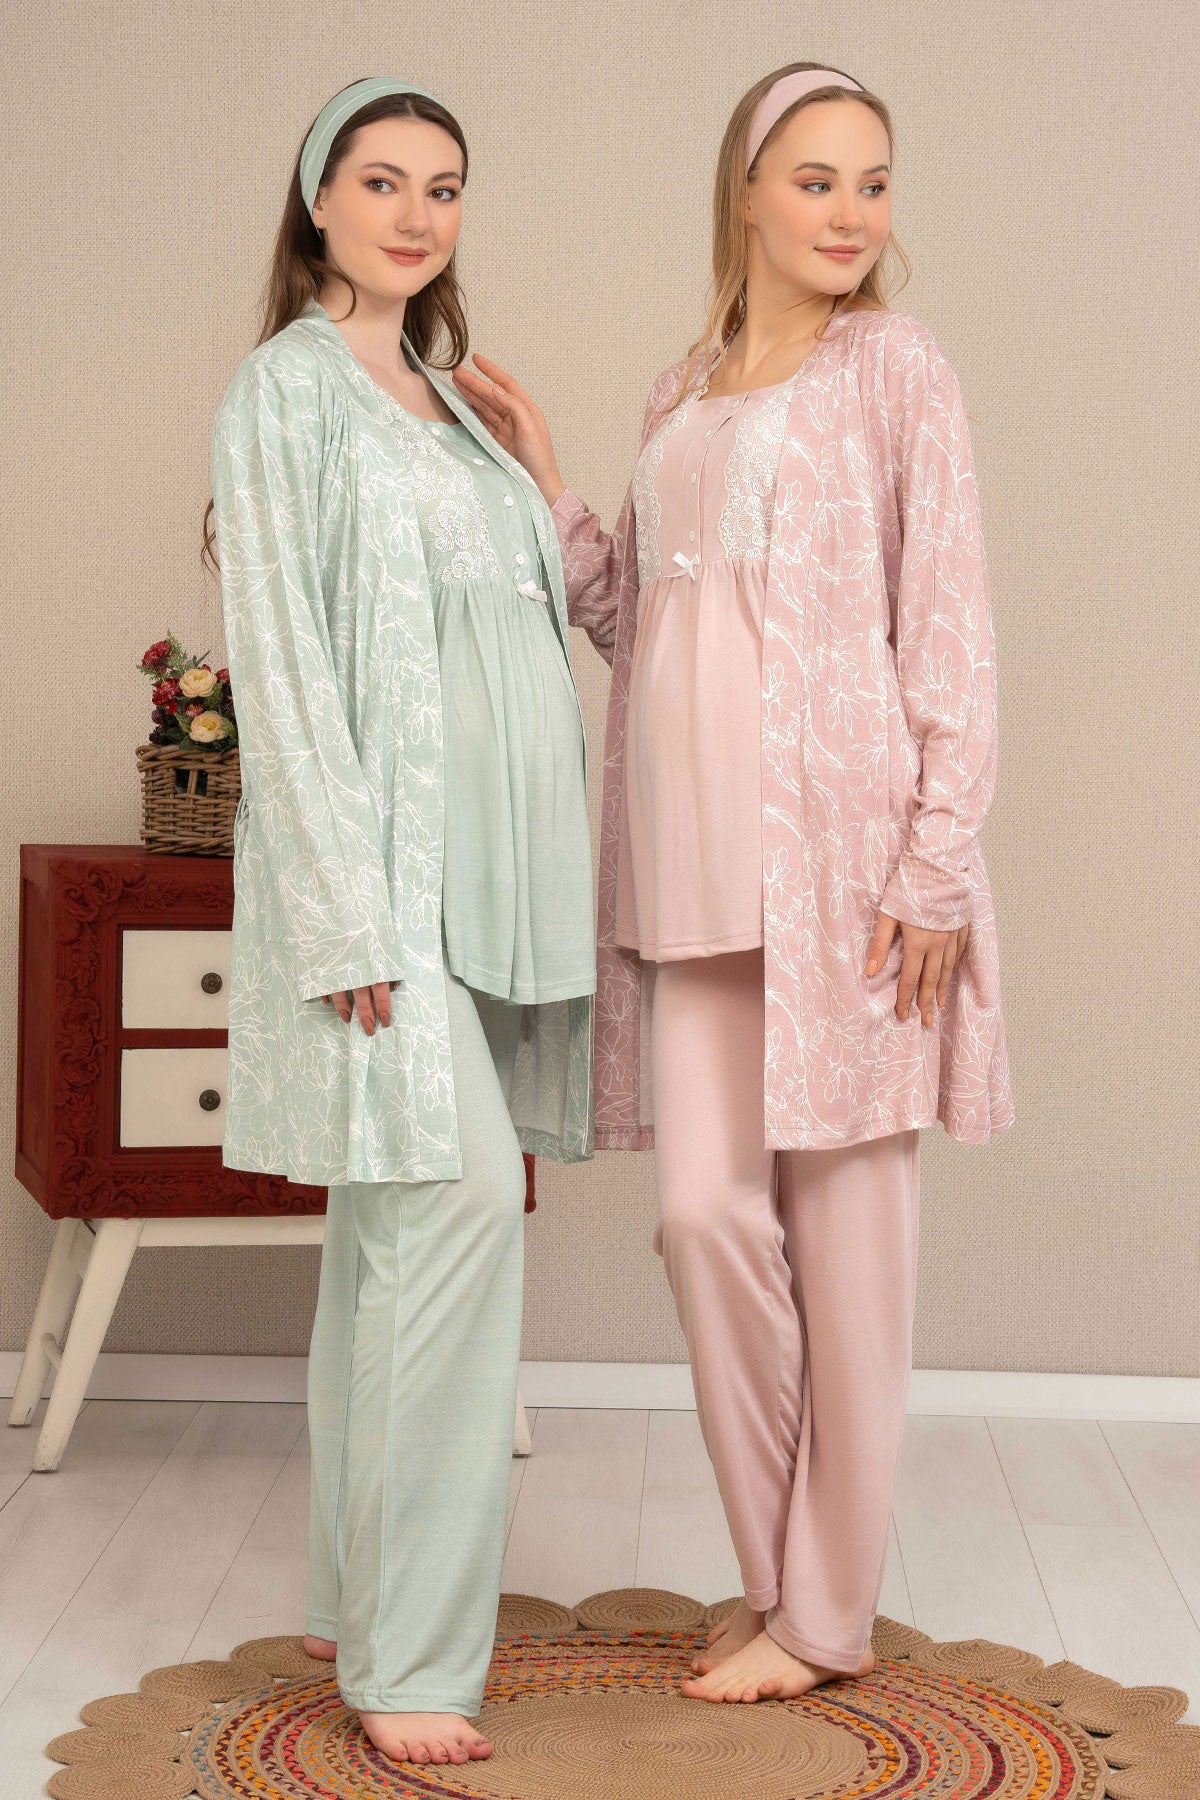 Lace Collar 3-Pieces Maternity & Nursing Pajamas With Patterned Jacquard Robe Salmon - 4507